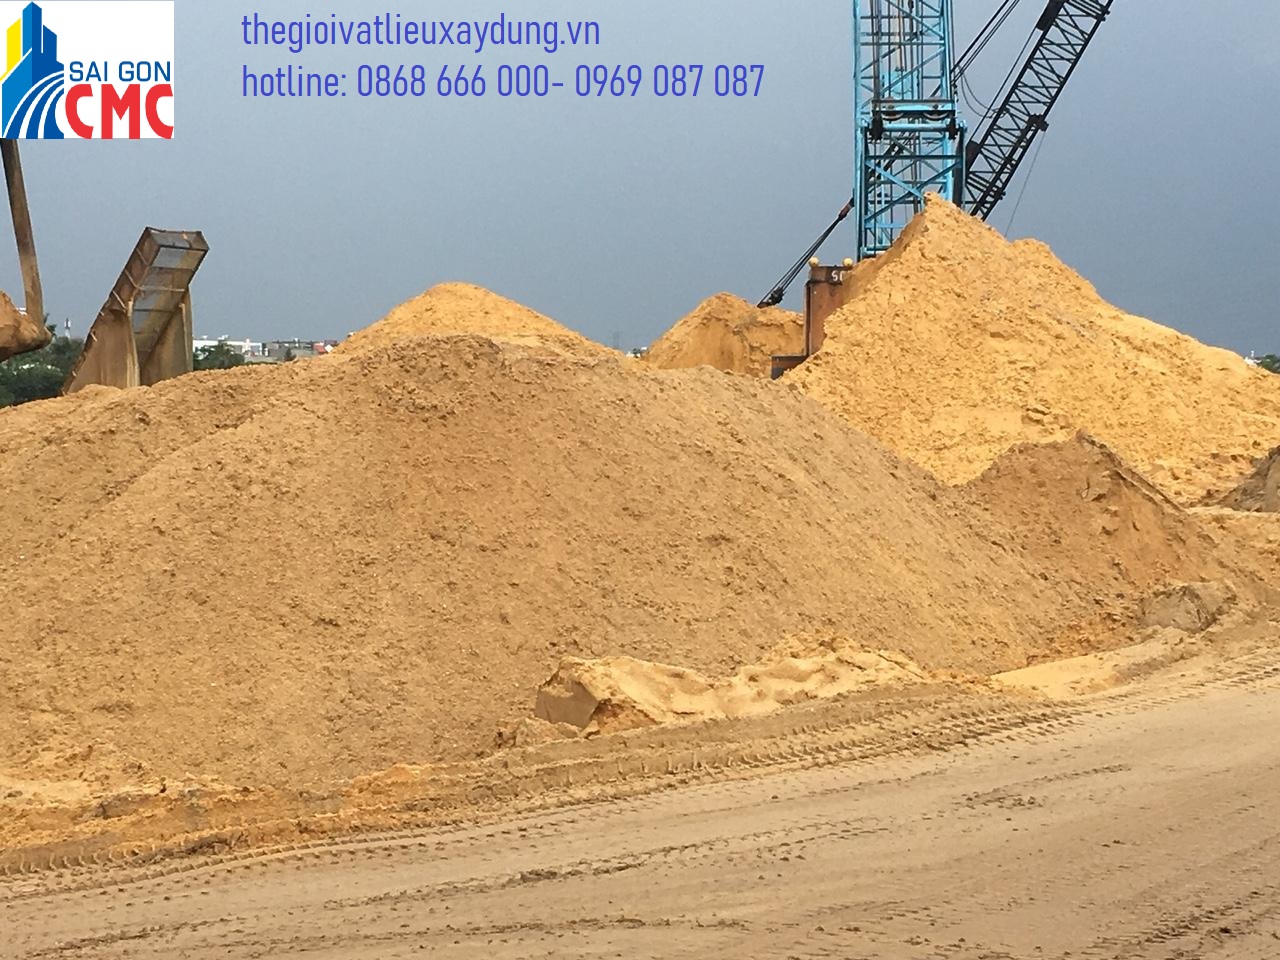 Cung cấp bảng giá cát xây dựng mới nhất năm 2020 | Sài Gòn CMC